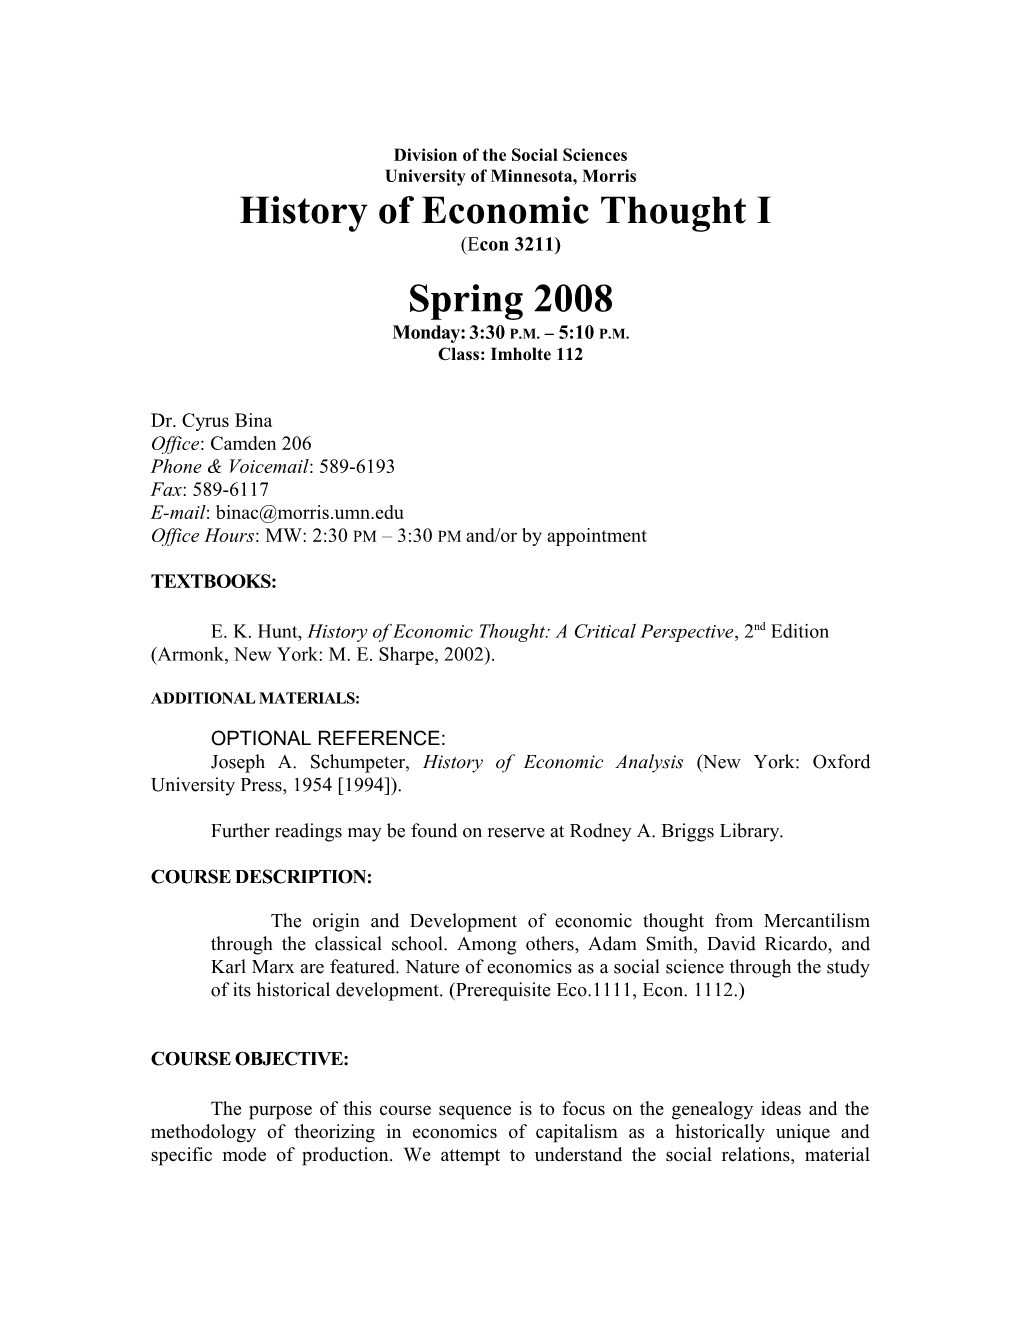 History of Economic Thought I: Syllabus